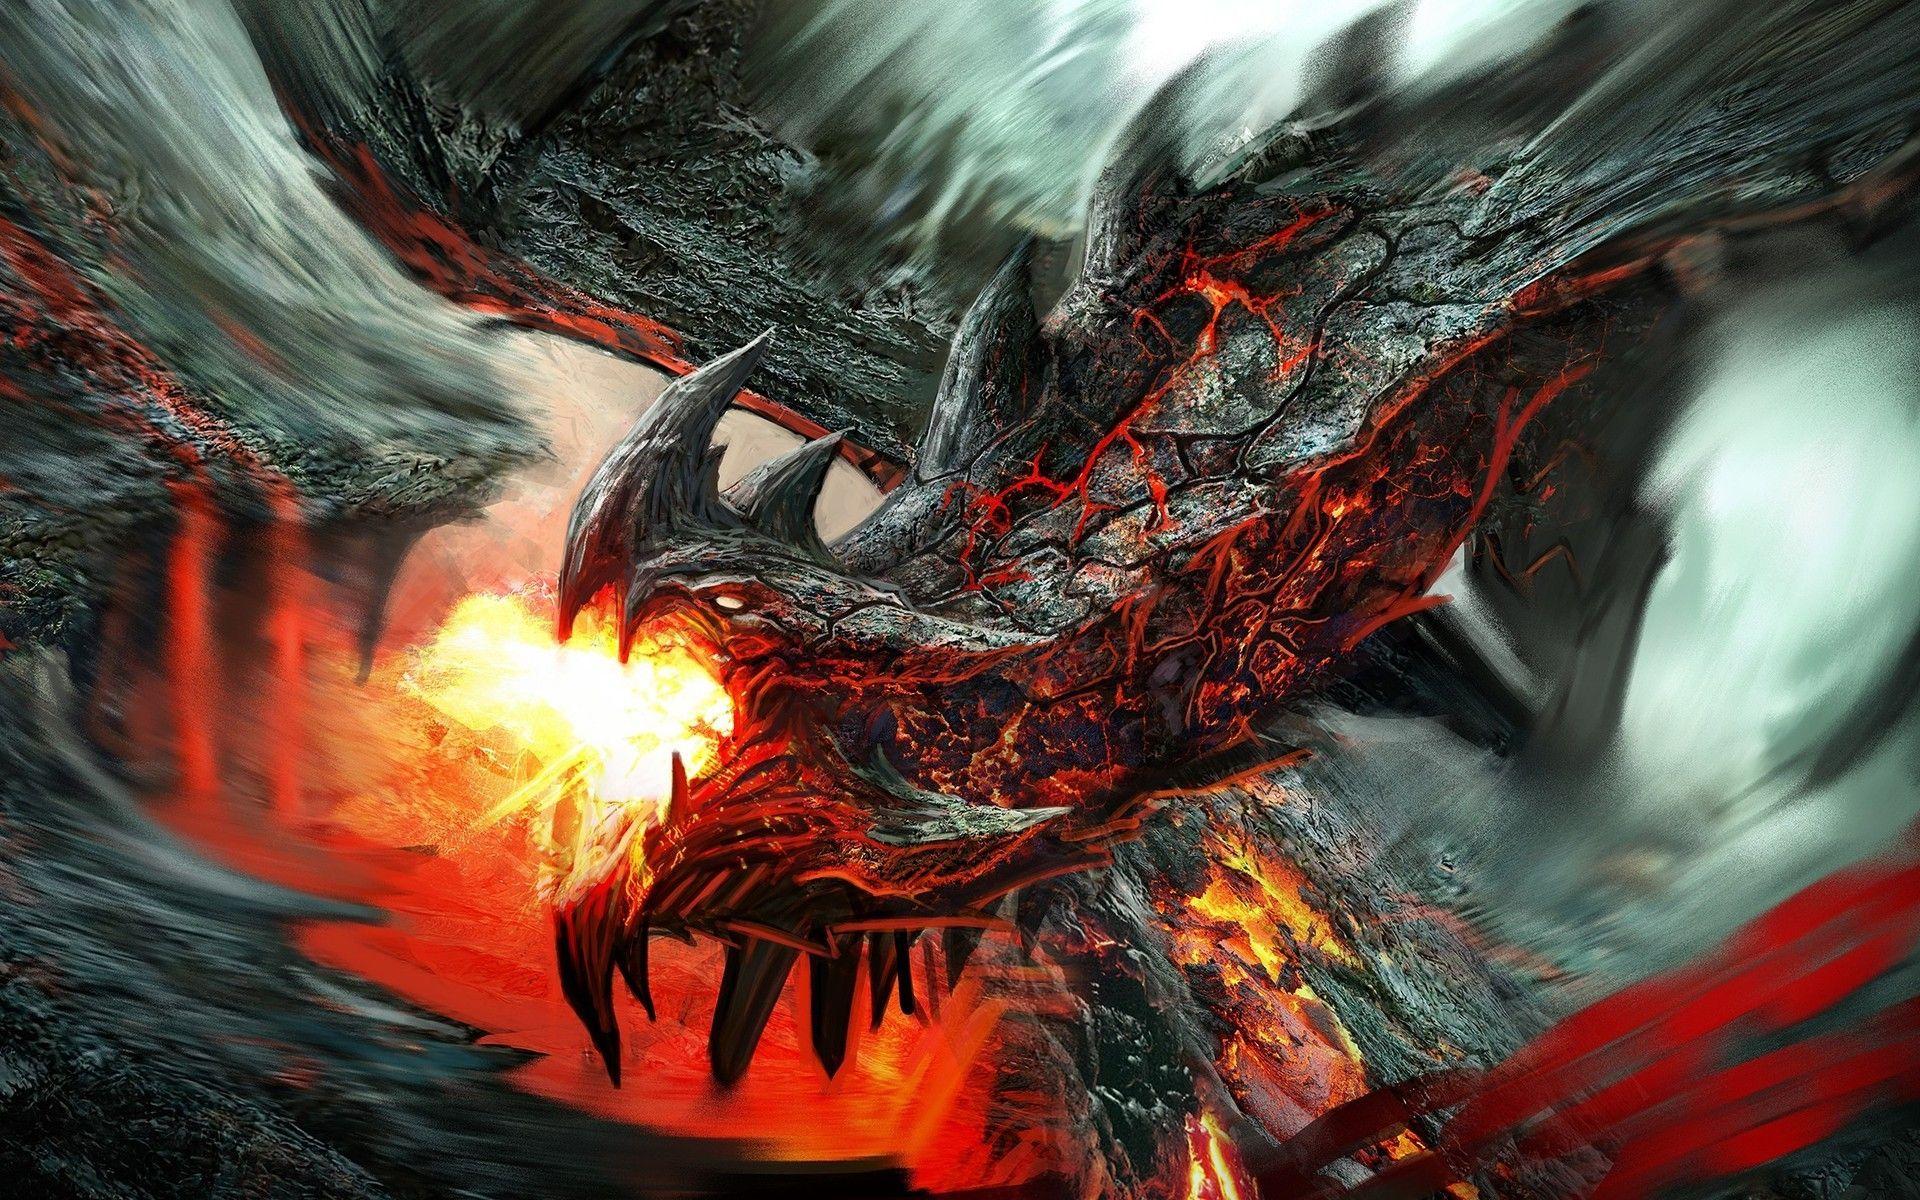 Fire breathing lava dragon Wallpaper. Dragon picture, Fantasy dragon, Dragon image